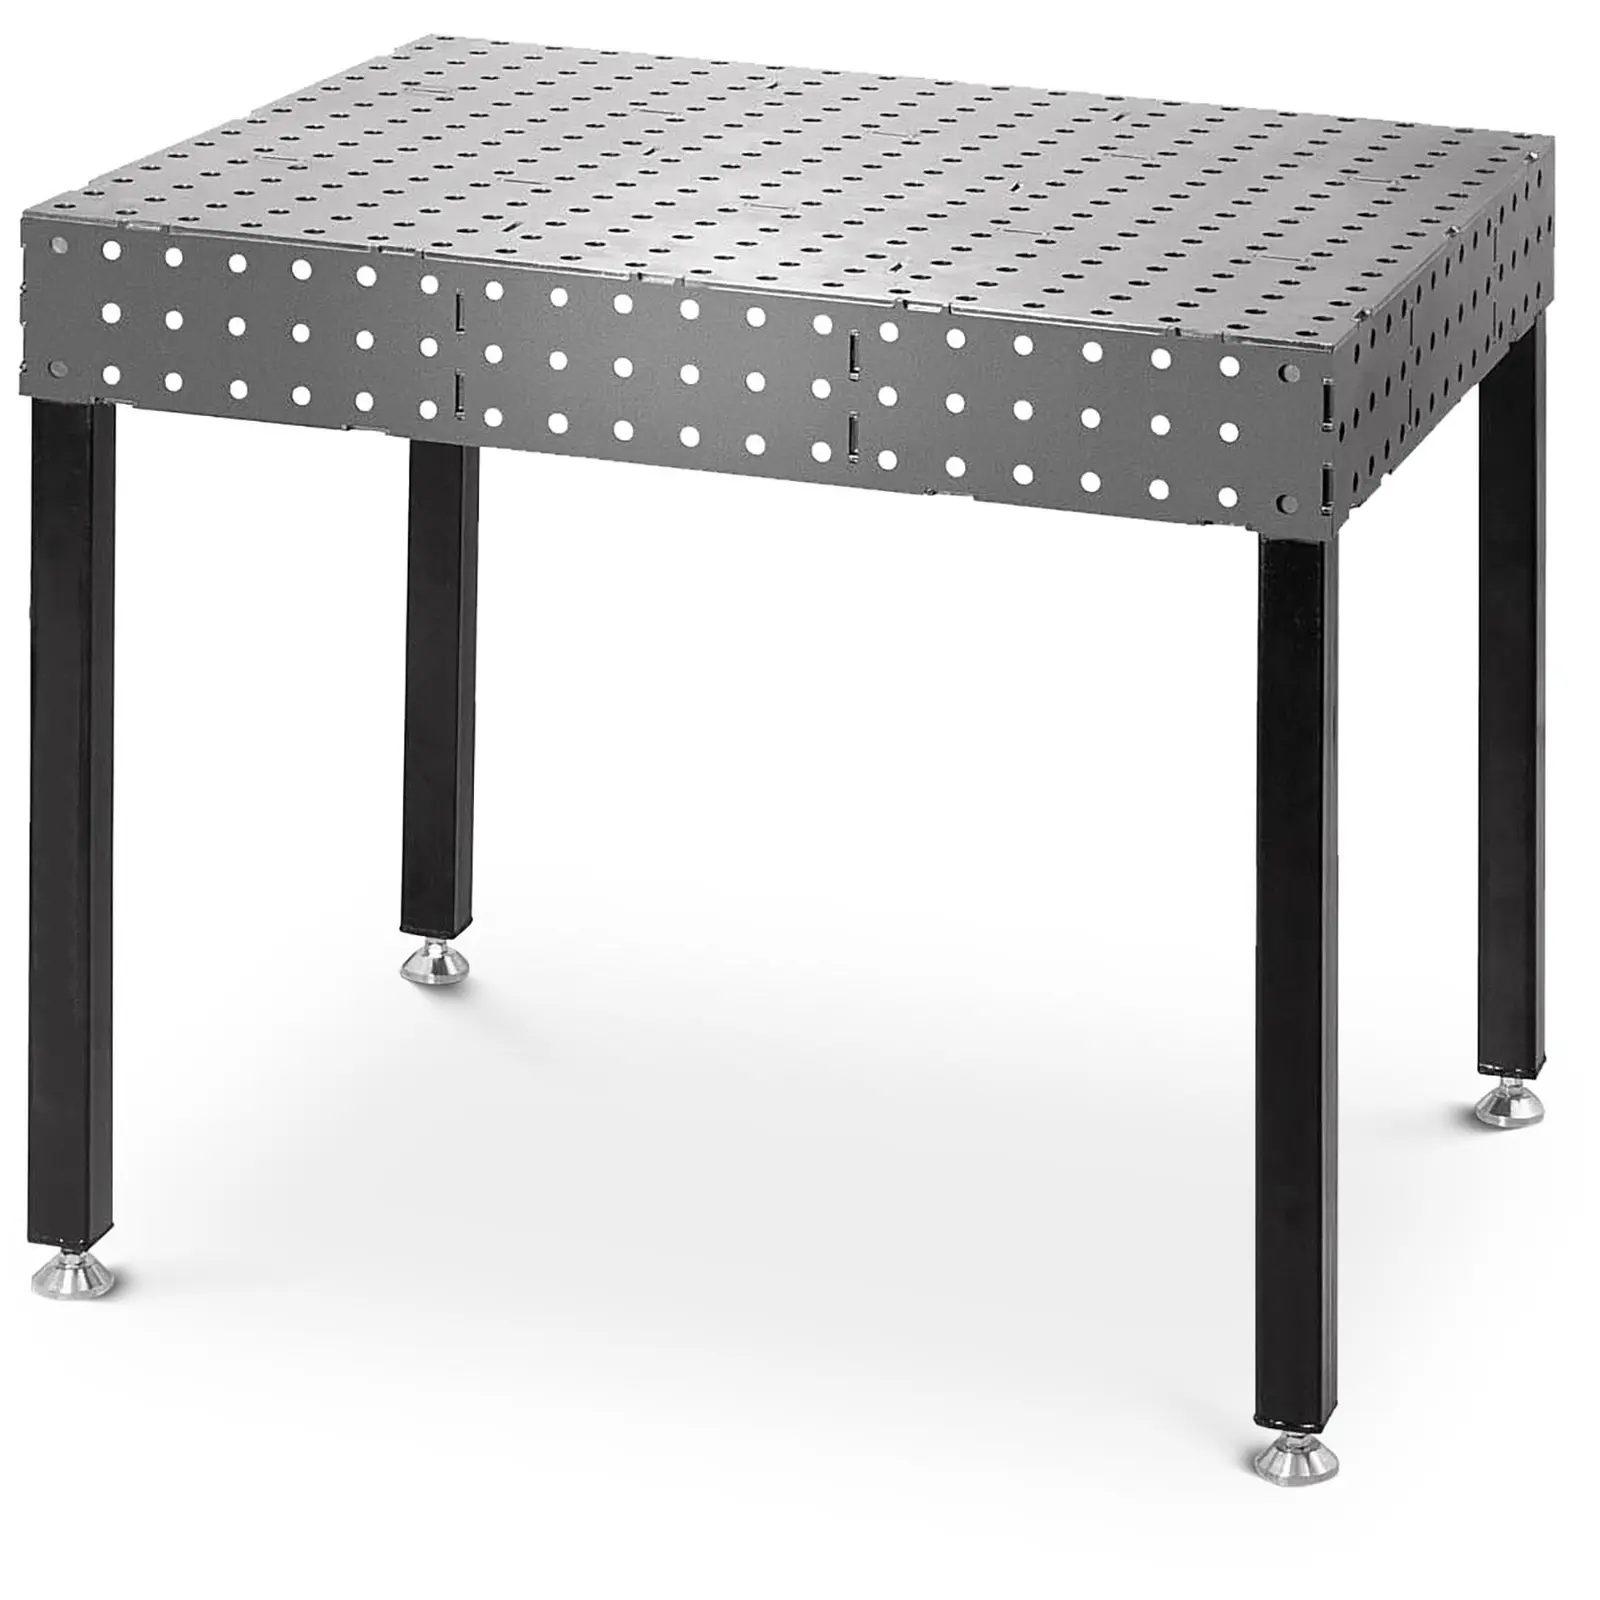 Sveisebord med kant - 1000 kg - 120 x 80 cm